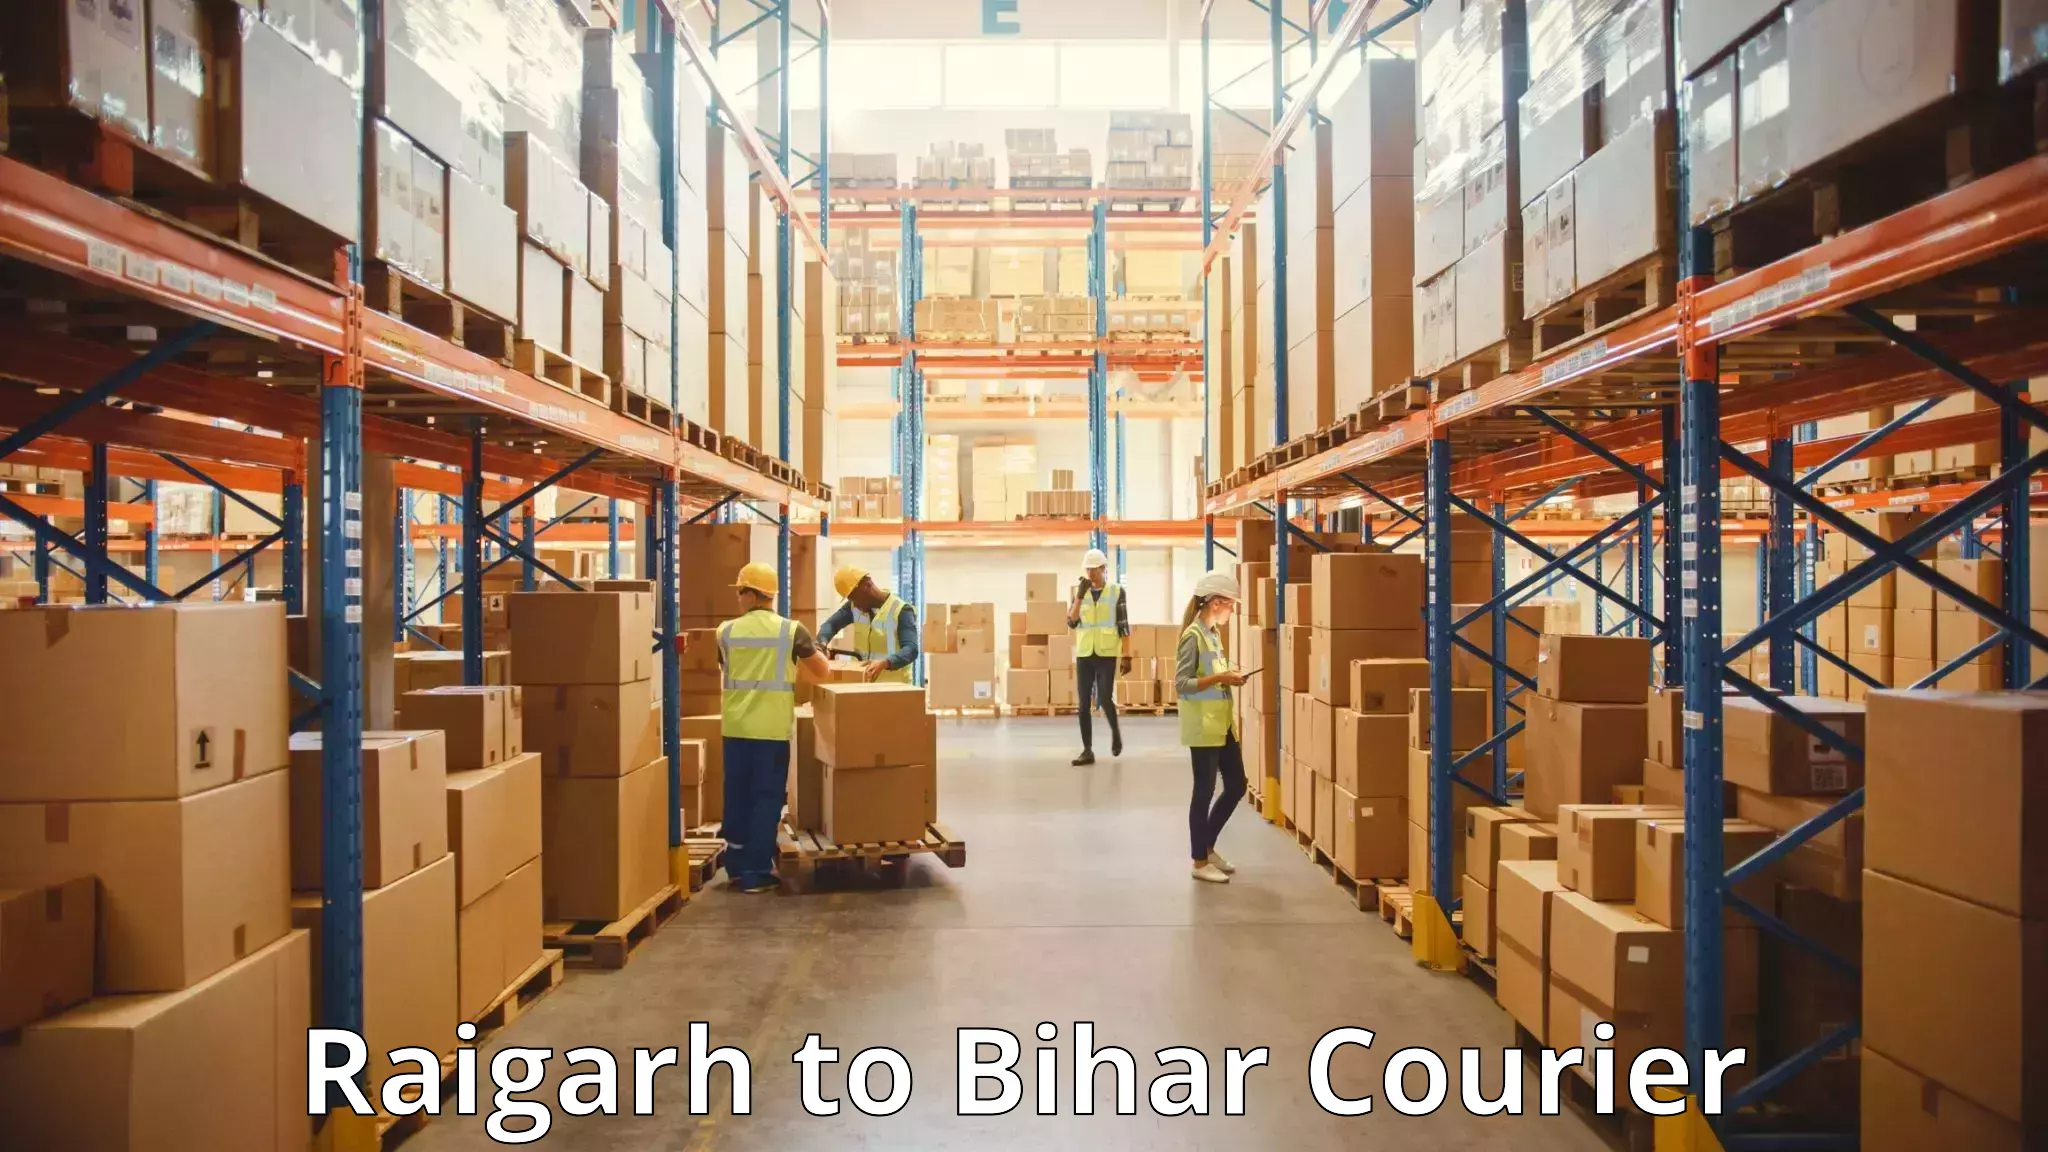 Door-to-door baggage service Raigarh to Bihar